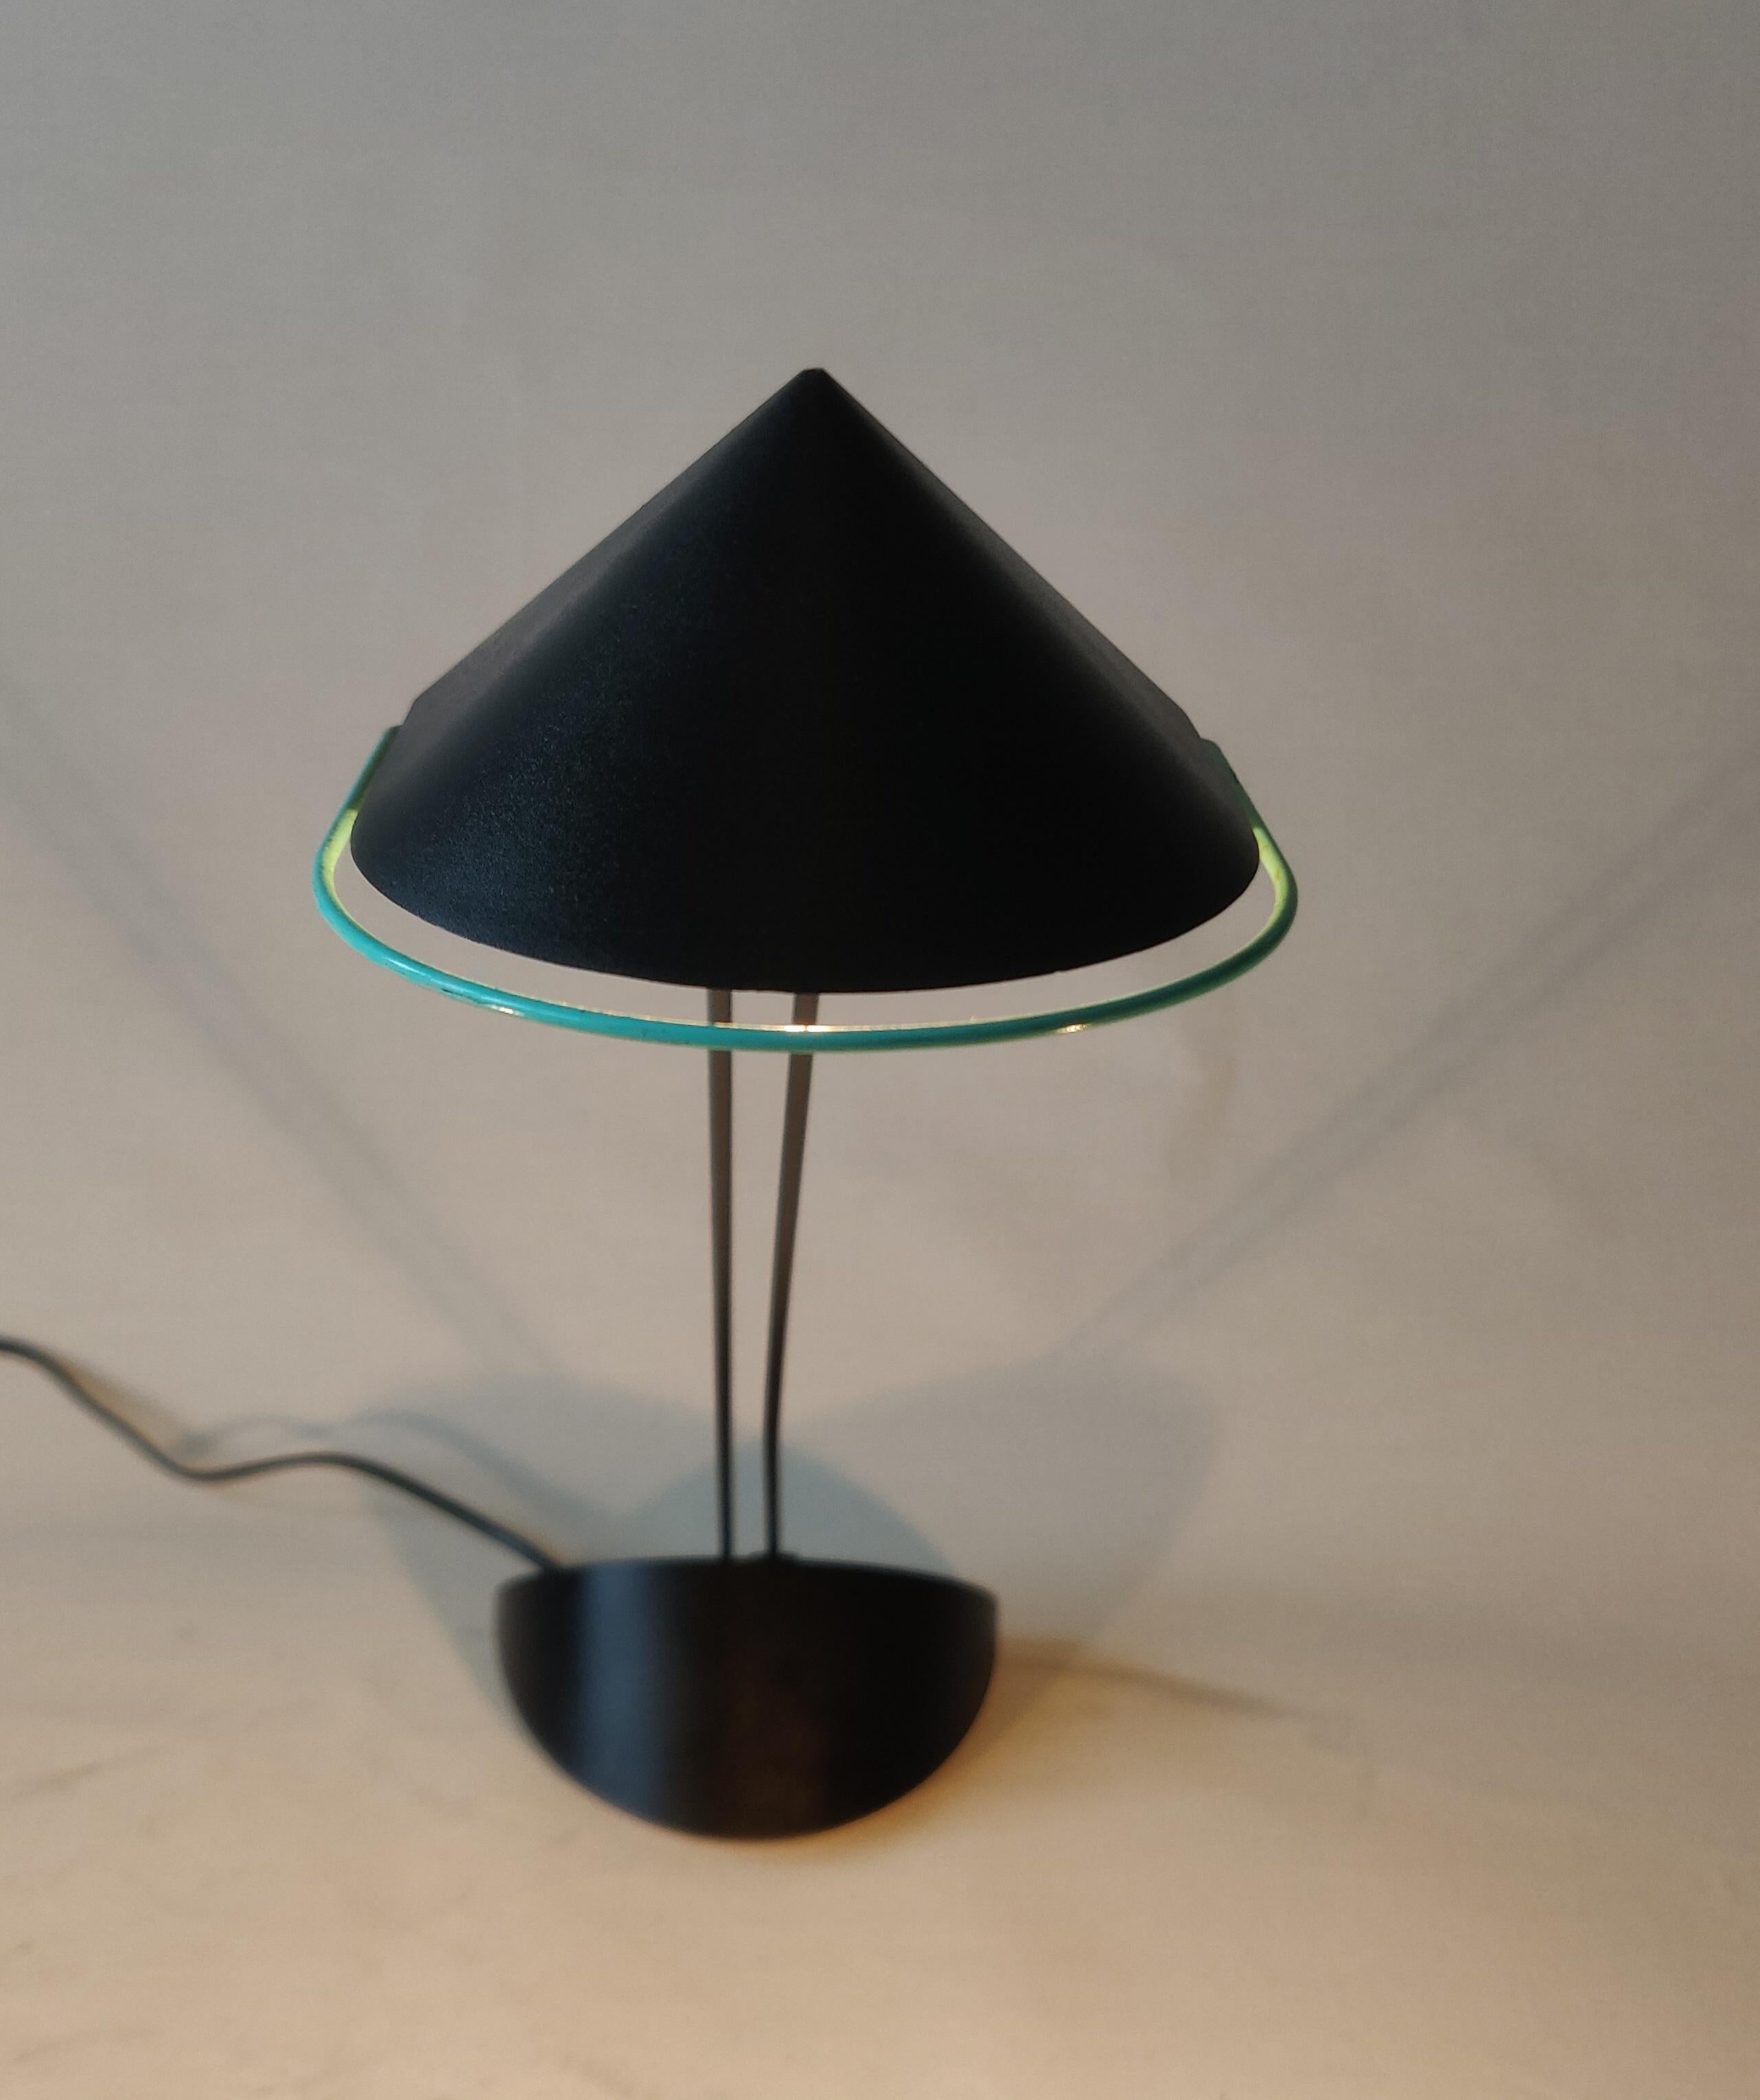 Minimalist Dutch Design 'Priola' Desk Lamp by Ad Van Berlo for Indoor, 1980s For Sale